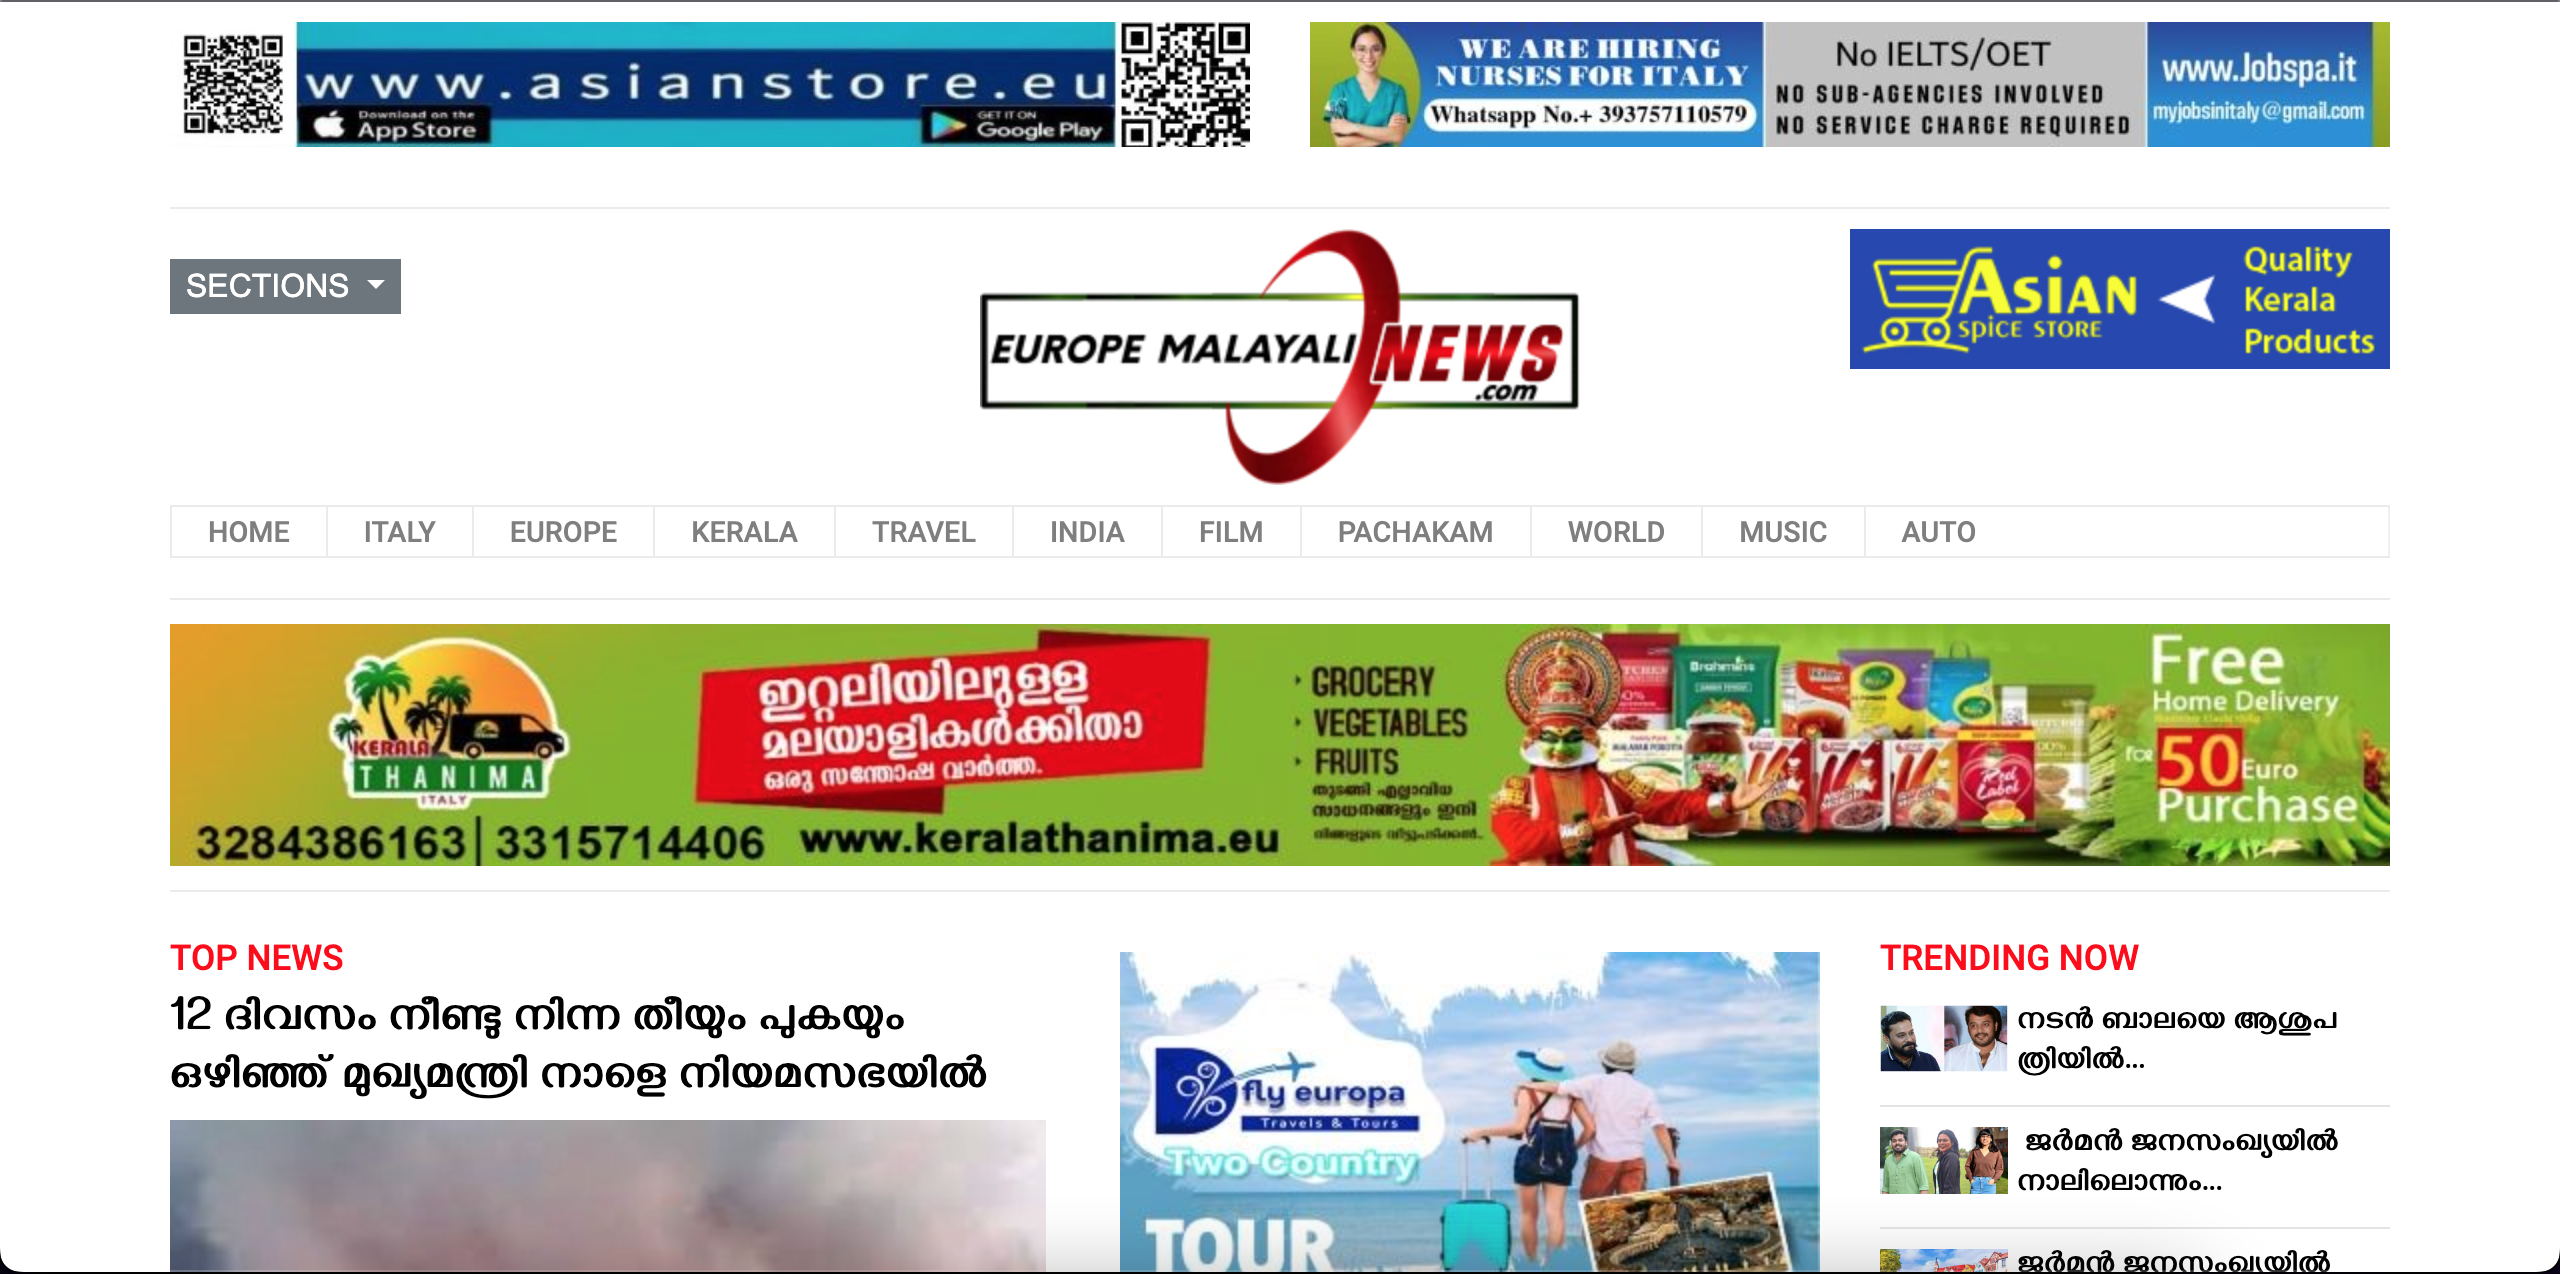 Europe Malayali News